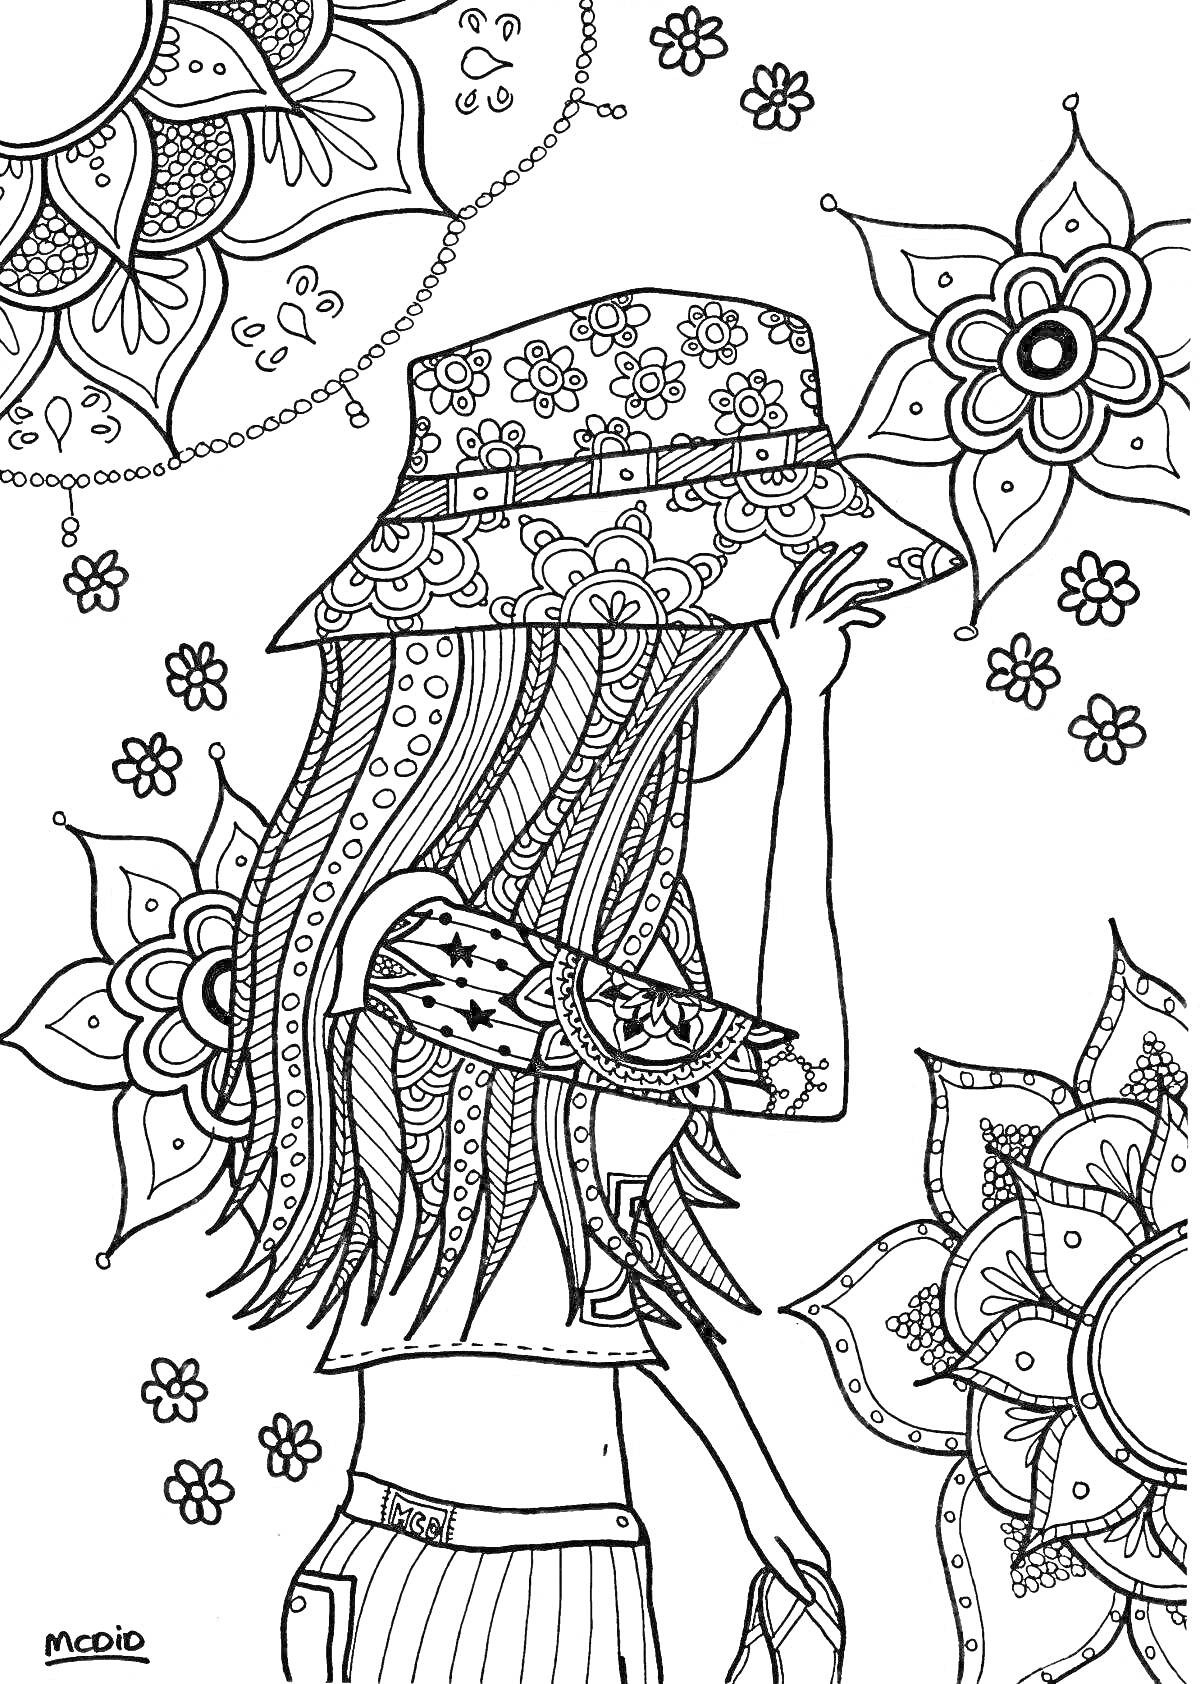 Девушка в шляпе с цветочным узором, с татуировками, на фоне цветочных орнаментов